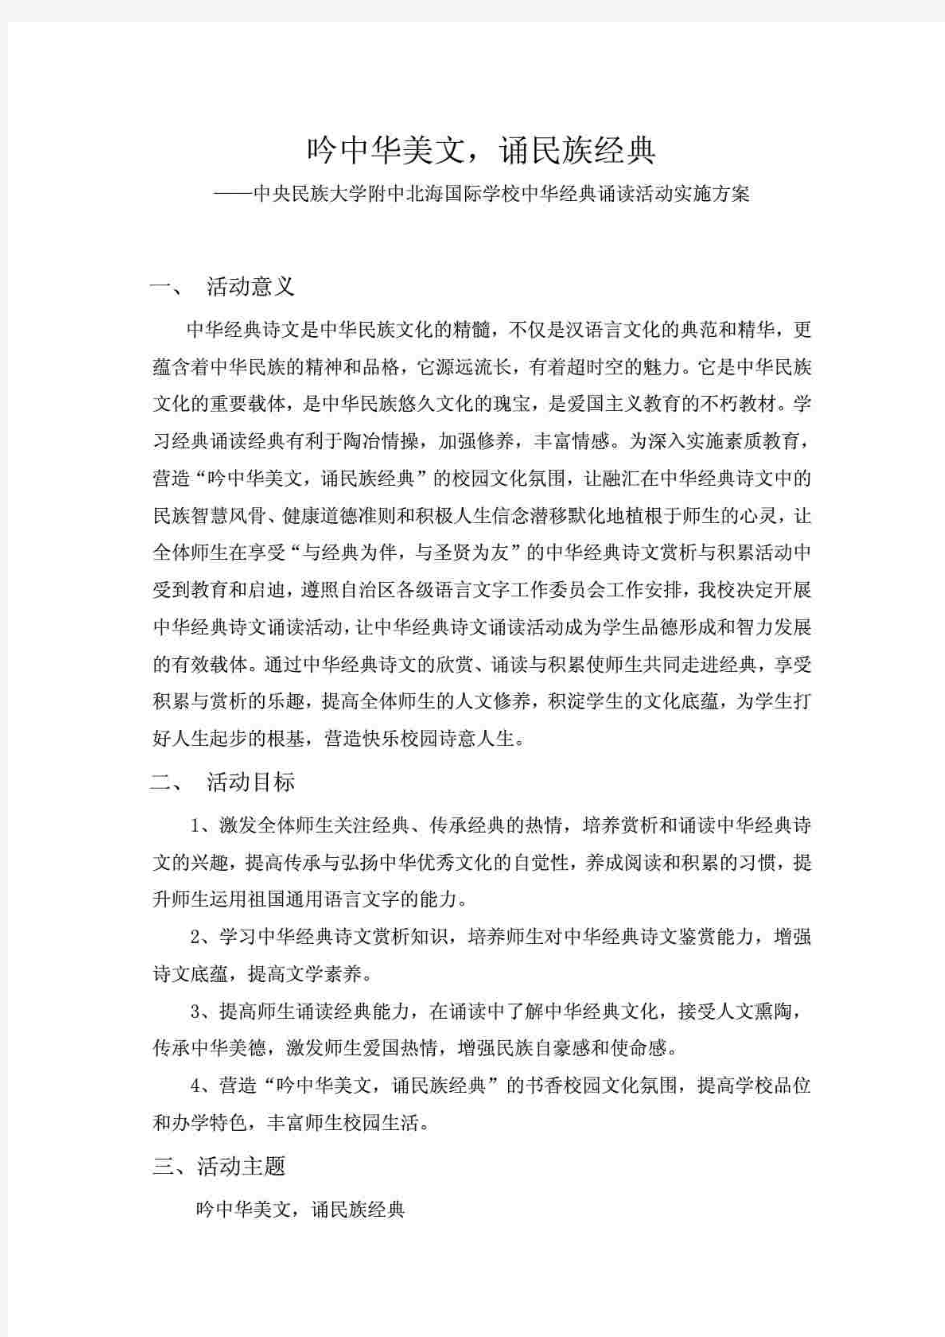 中华经典诵读活动实施方案(2013)